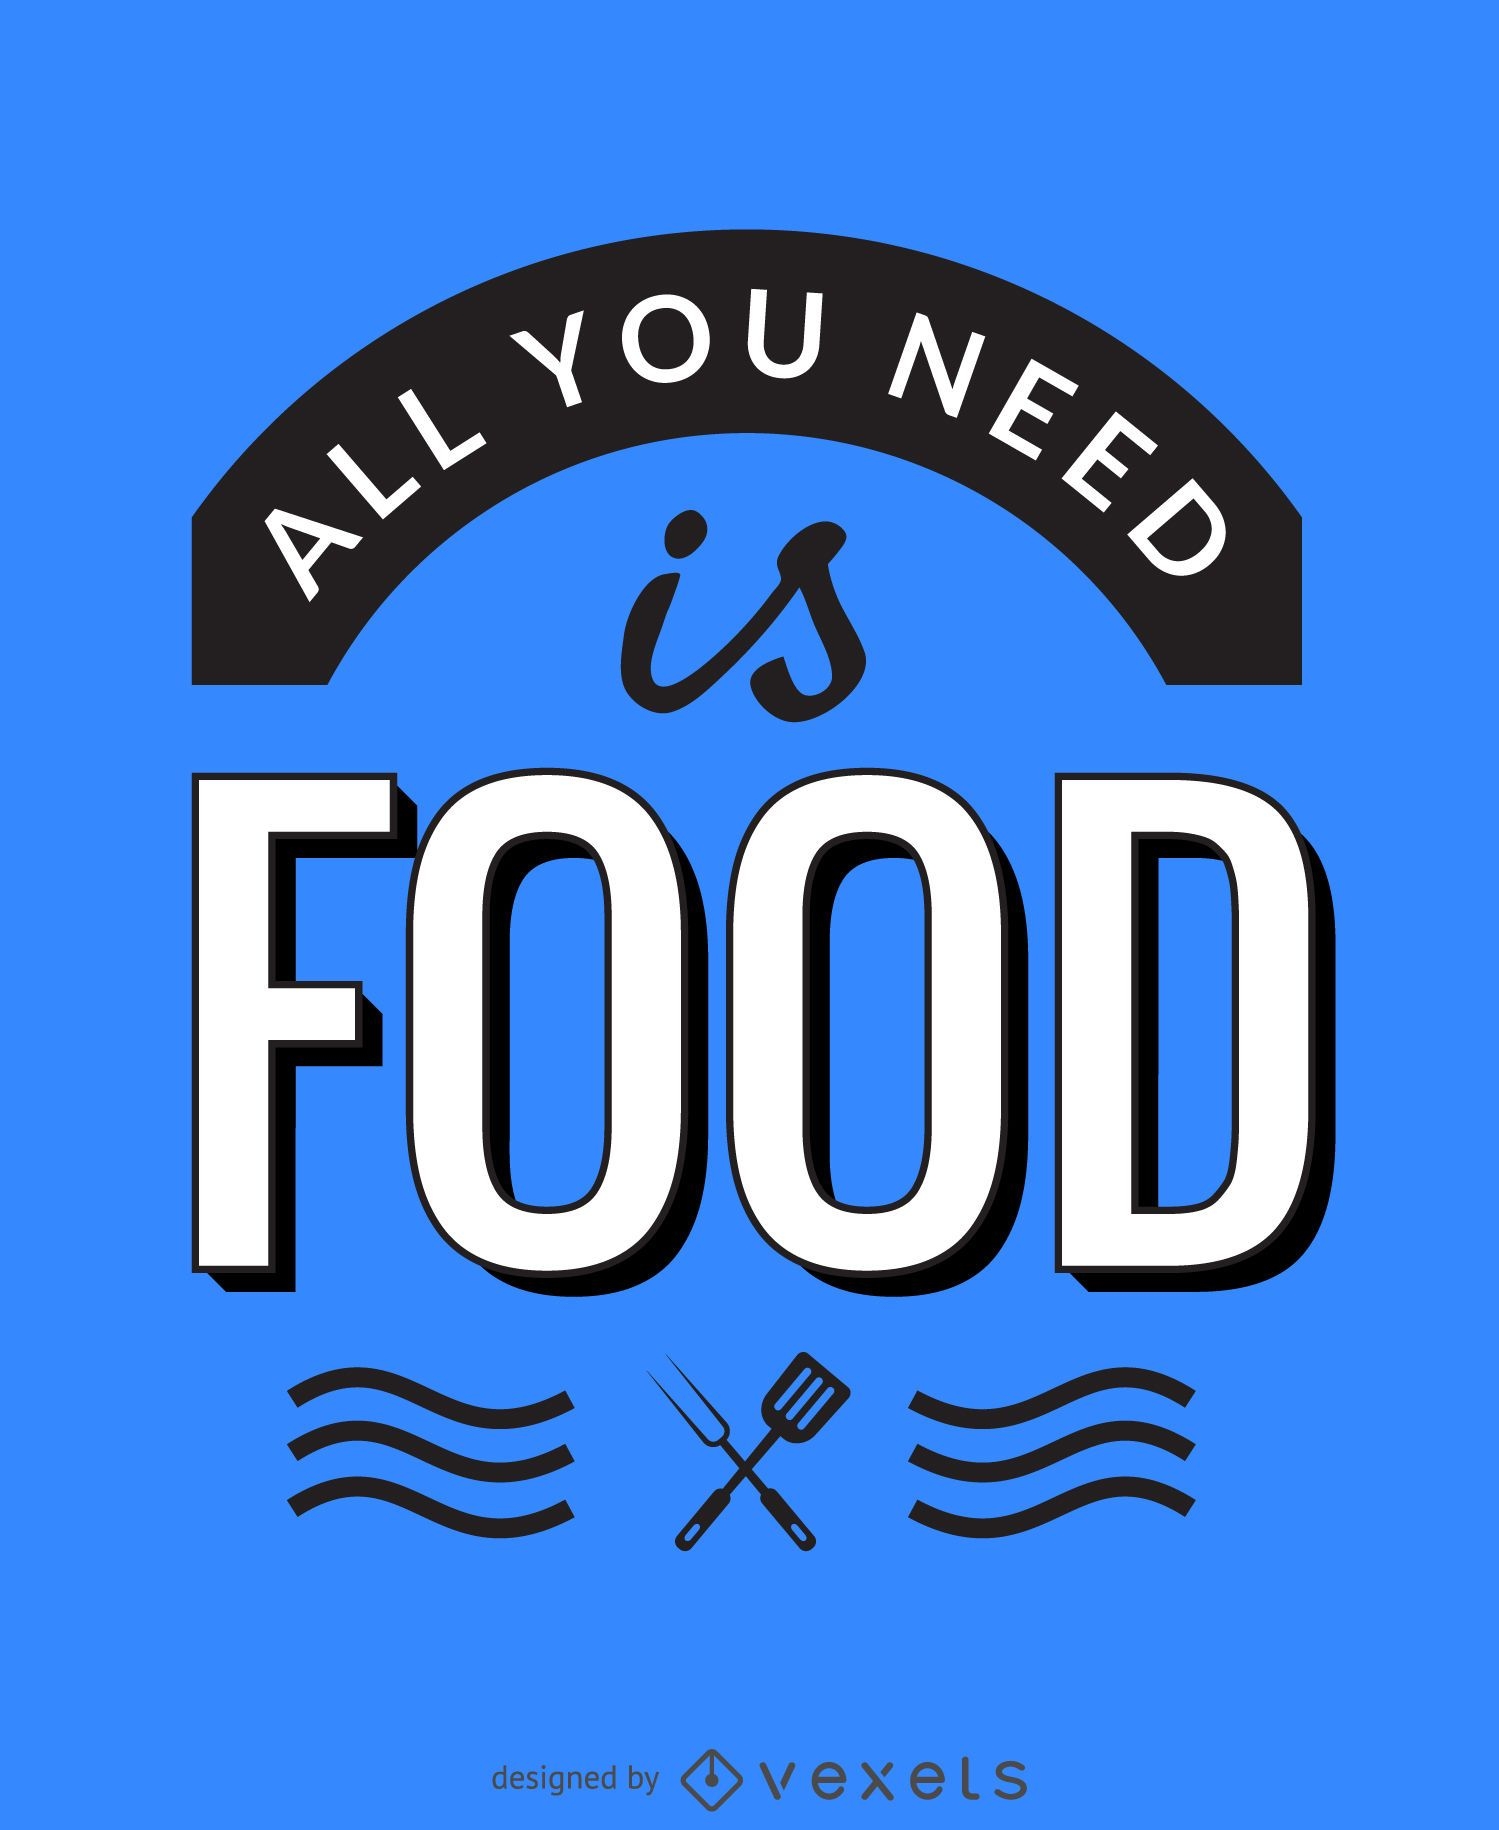 Todo lo que necesitas es cartel de comida.